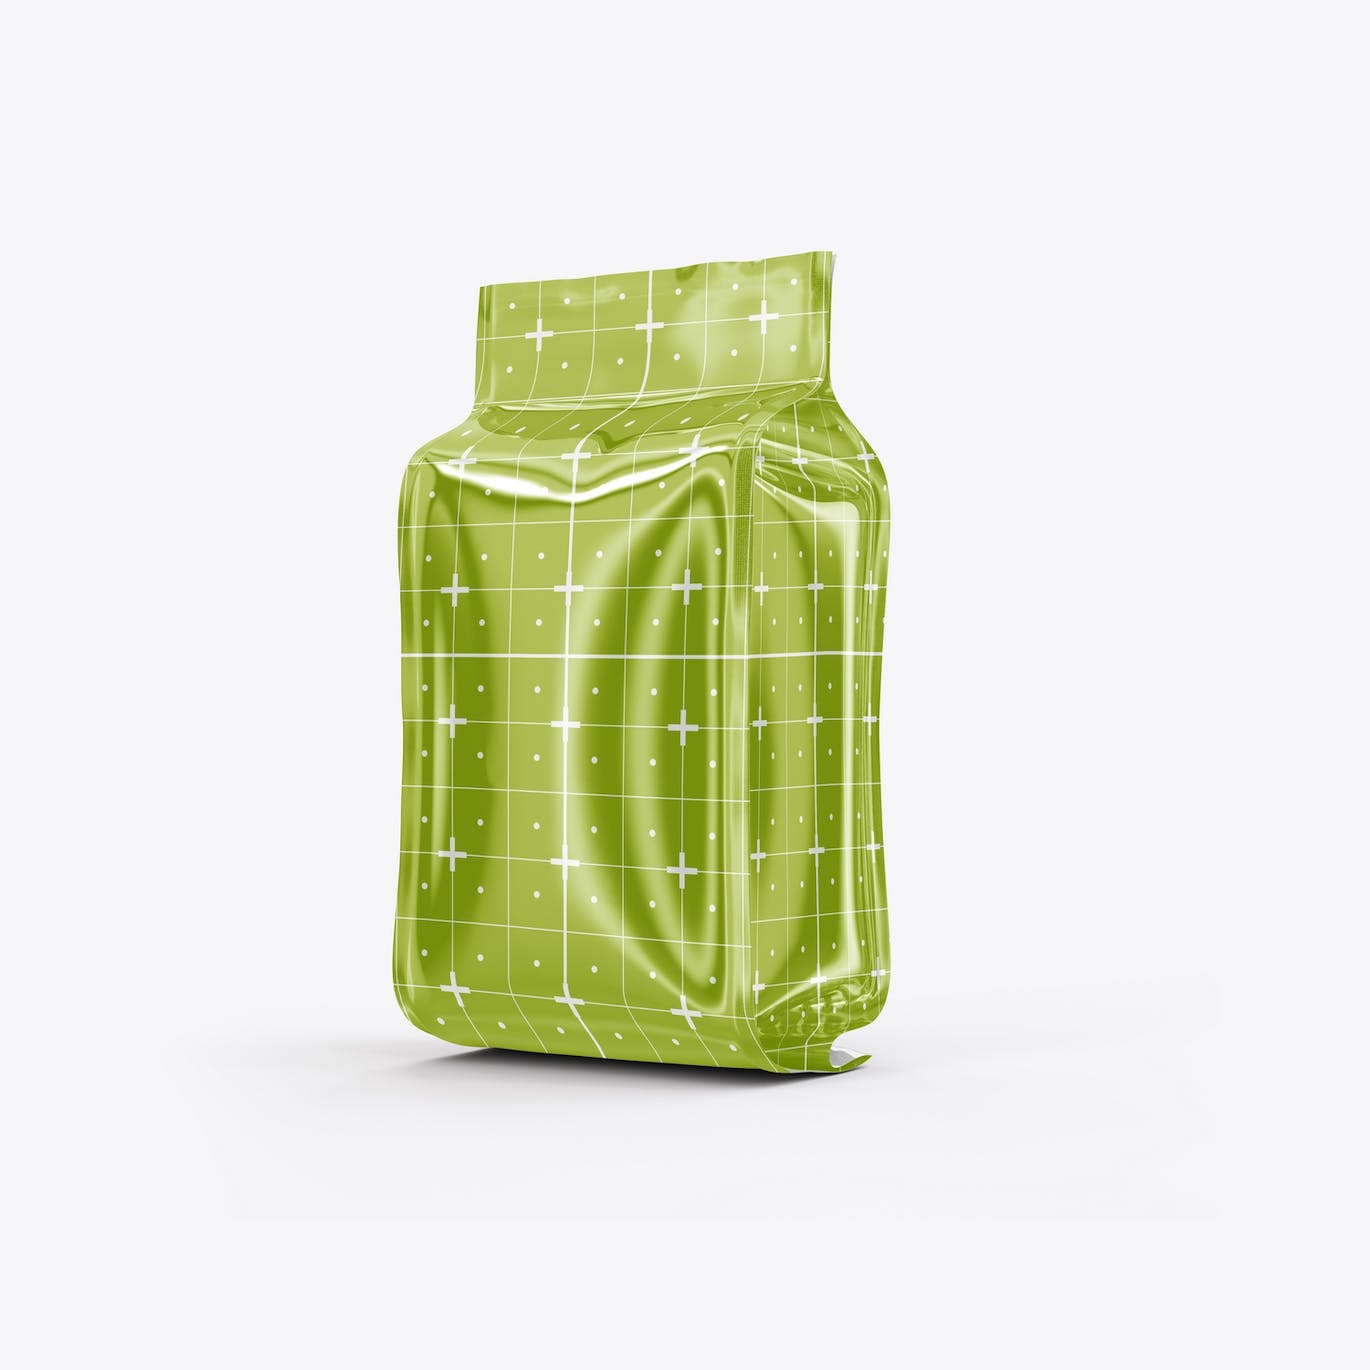 光滑的塑料纸咖啡袋包装设计样机图 Set Glossy Plastic Paper Coffee Bag Mockup 样机素材 第2张